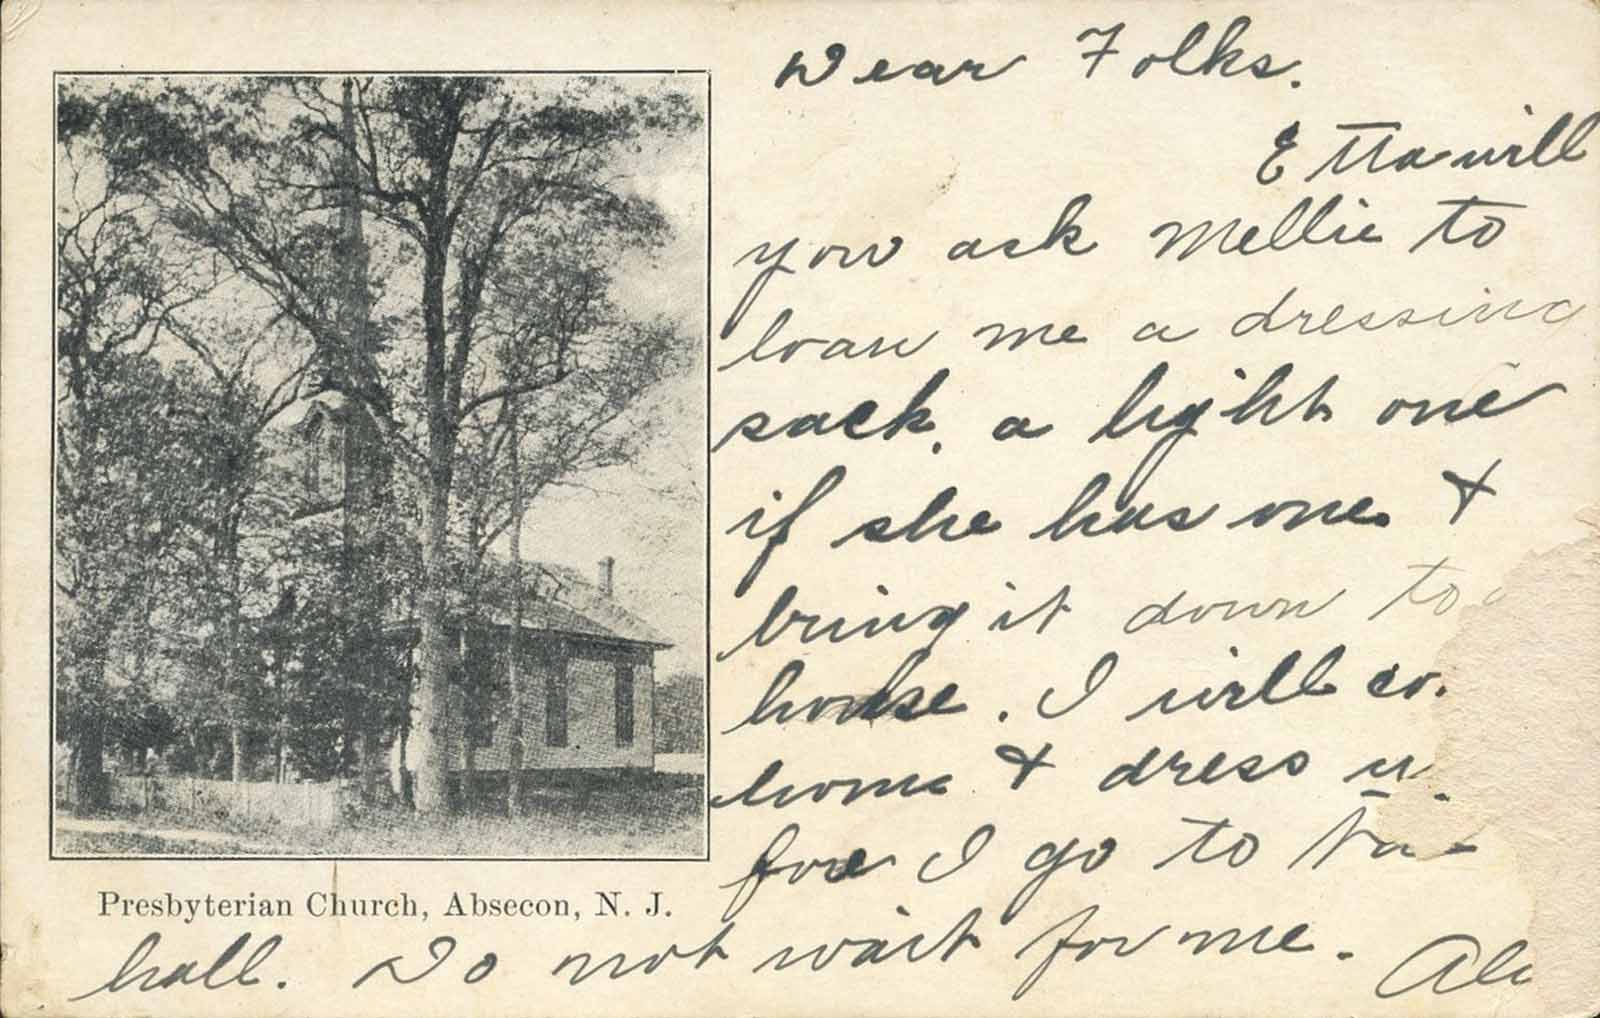 Absecon - Presbyterian Church - 1907